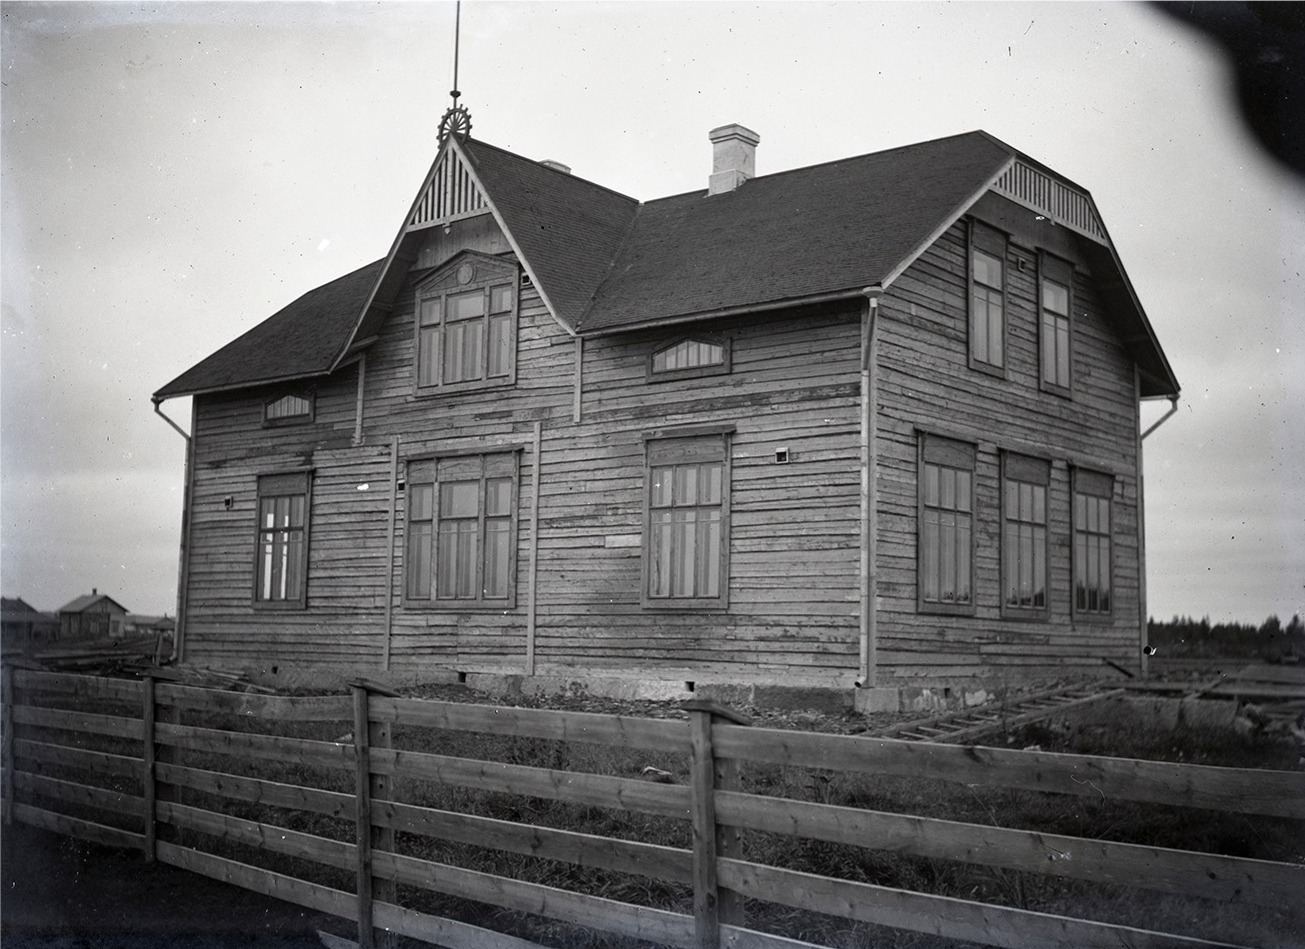 Skolbyggnaden i Perus eller den Östra folkskolan i Lappfjärd är också uppförd av Viktor Nylund och den stod färdig 1912. Den tidigare skolbyggnaden i Perus som blev färdig i november 1908, förstördes i en brand i september 1910. En del av virket till den nya skolan togs av den gamla, ur bruk tagna skolbyggnaden i Dagsmark. De Dagsmarkbor som år 1860 byggde det första skolhuset i Dagsmark, skulle nog känna sig nöjda och belåtna om de visste att åtminstone virket av det fortfarande används.